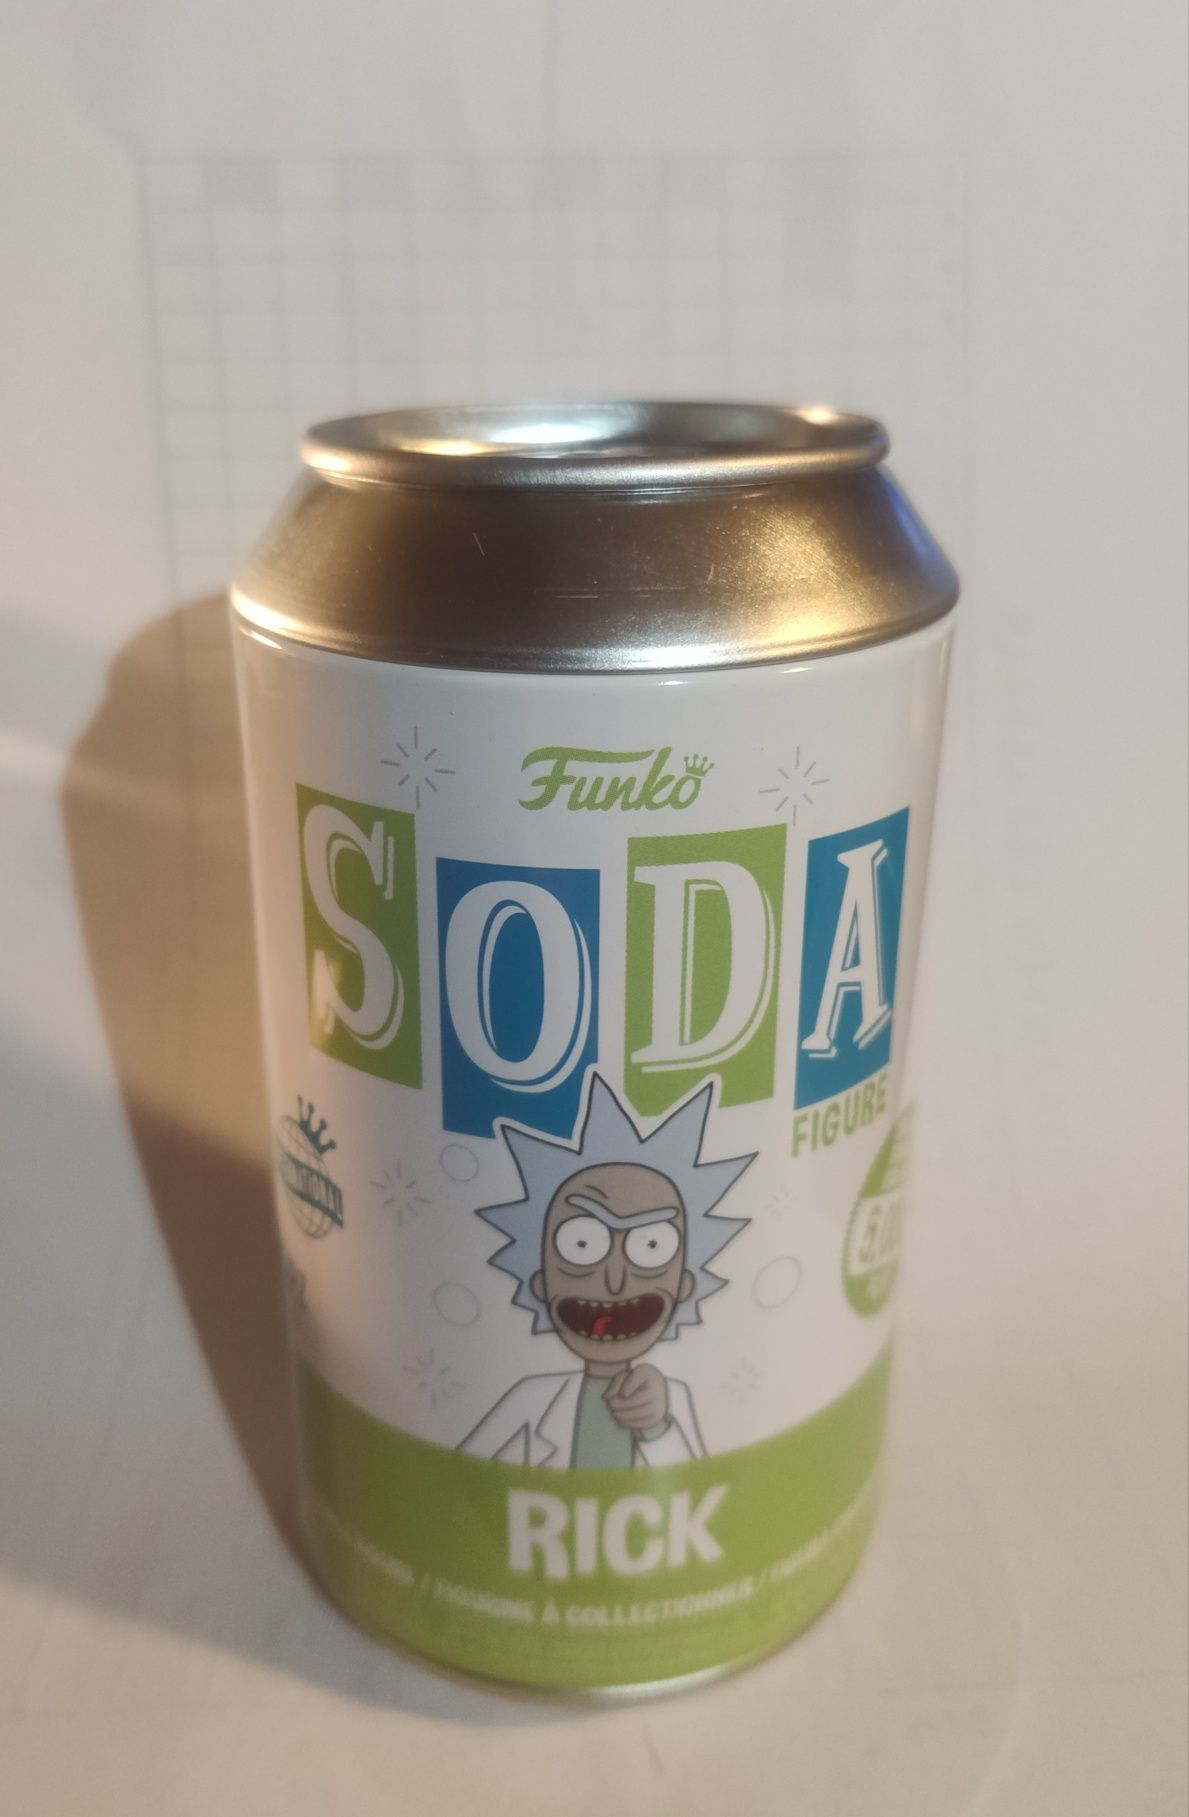 Funko Soda Rick and Morty